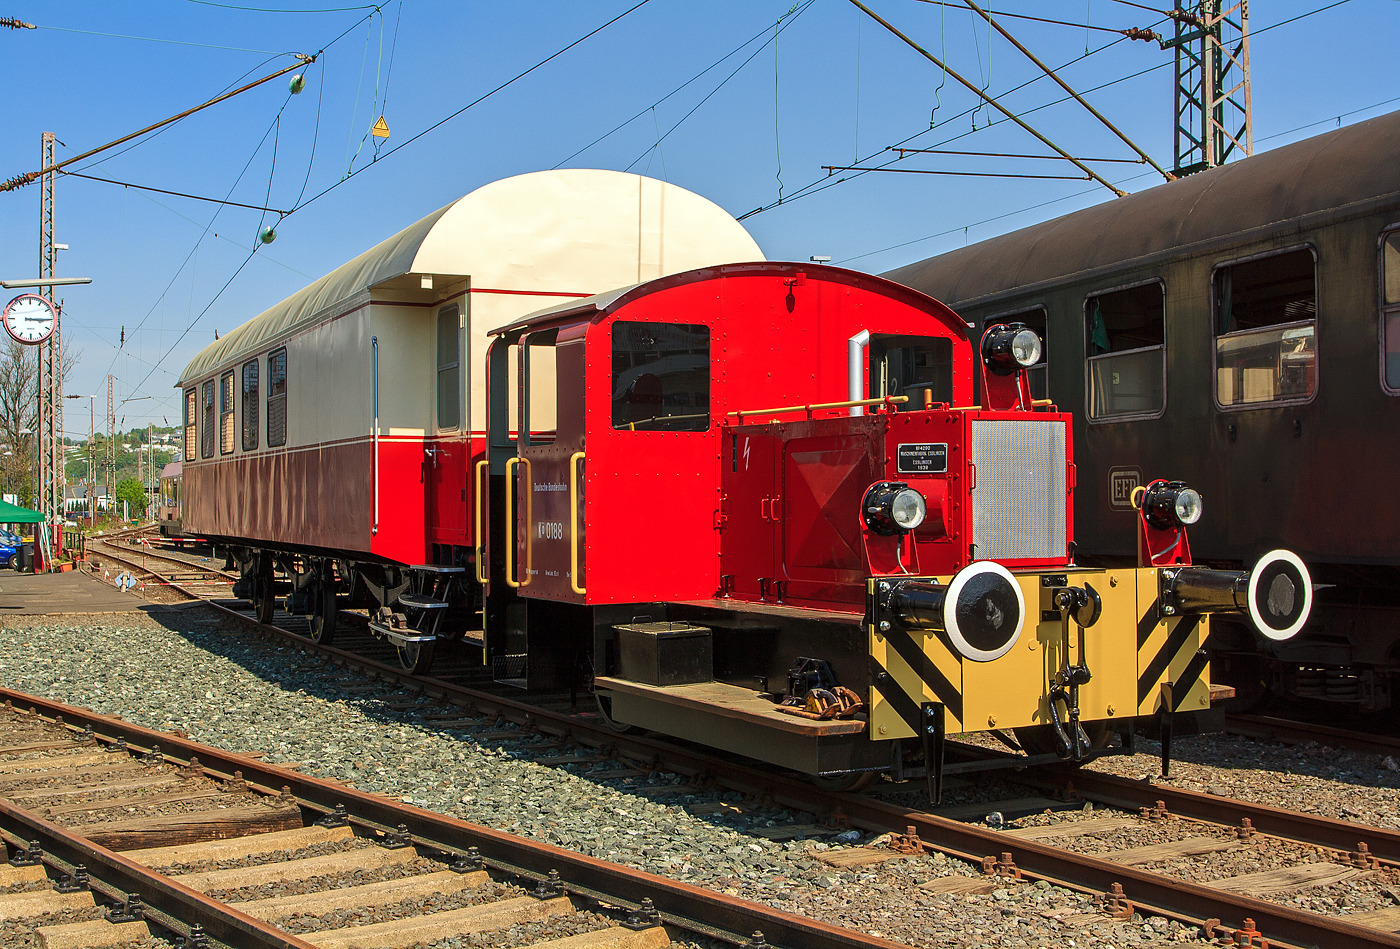 Die Kö 0188 (ex DB 311 188) steht am 23.04.2011, mit einem unbekannten dreiachsige Reisezugwagen, im Südwestfälische Eisenbahnmuseum in Siegen.

Die Lok wurde 1935 bei der Maschinenfabrik Esslingen mit der Fabriknummer 4290 gebaut.
